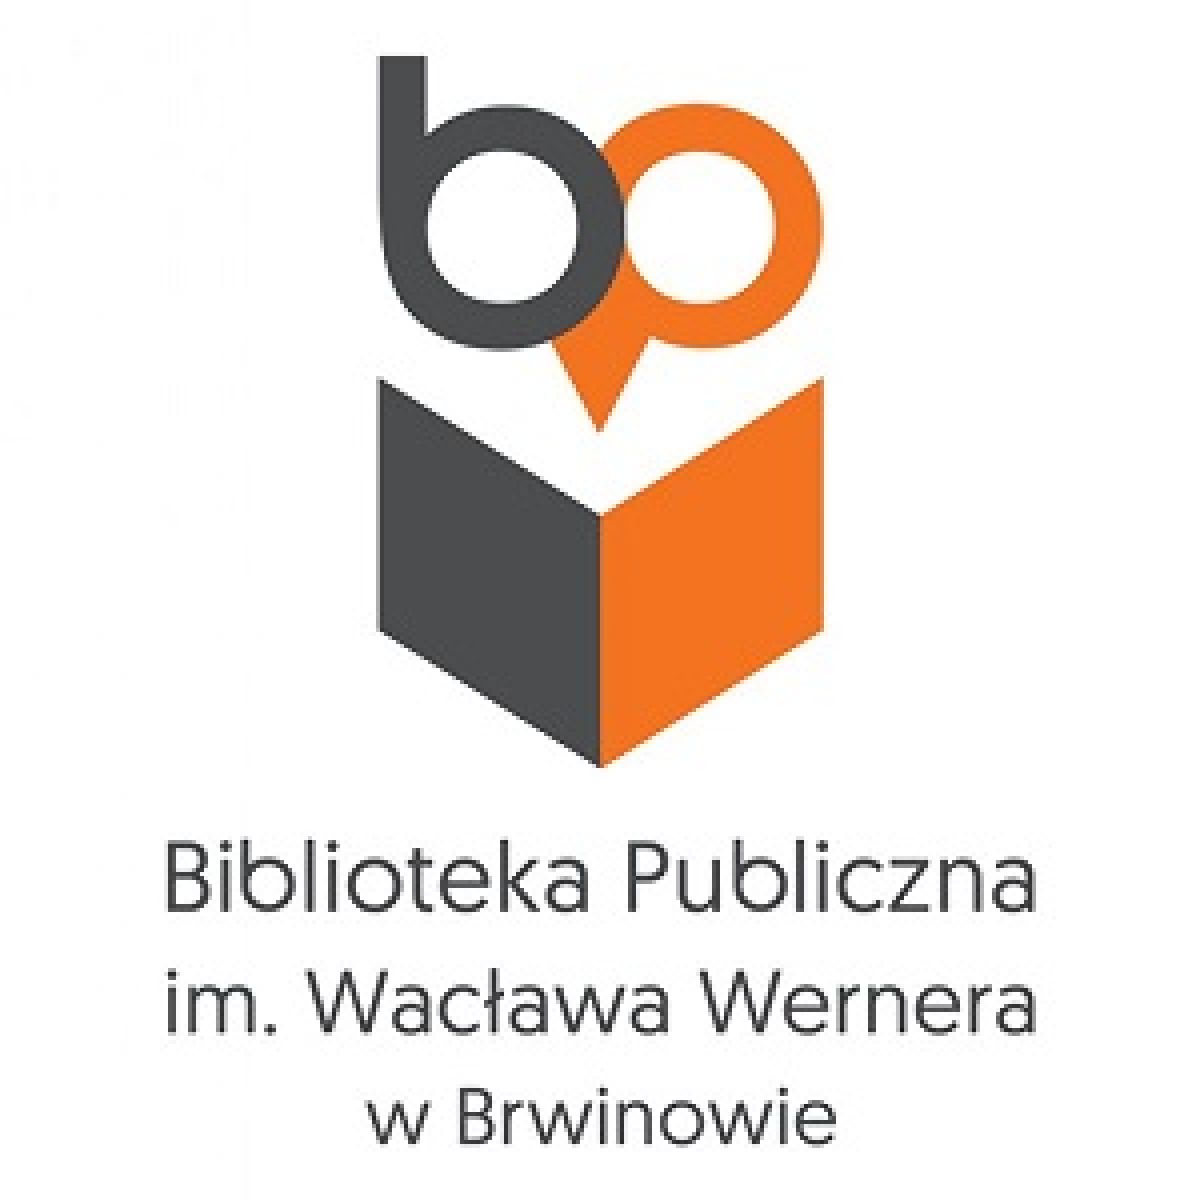 Biblioteka Publiczna im. Wacława Wernera